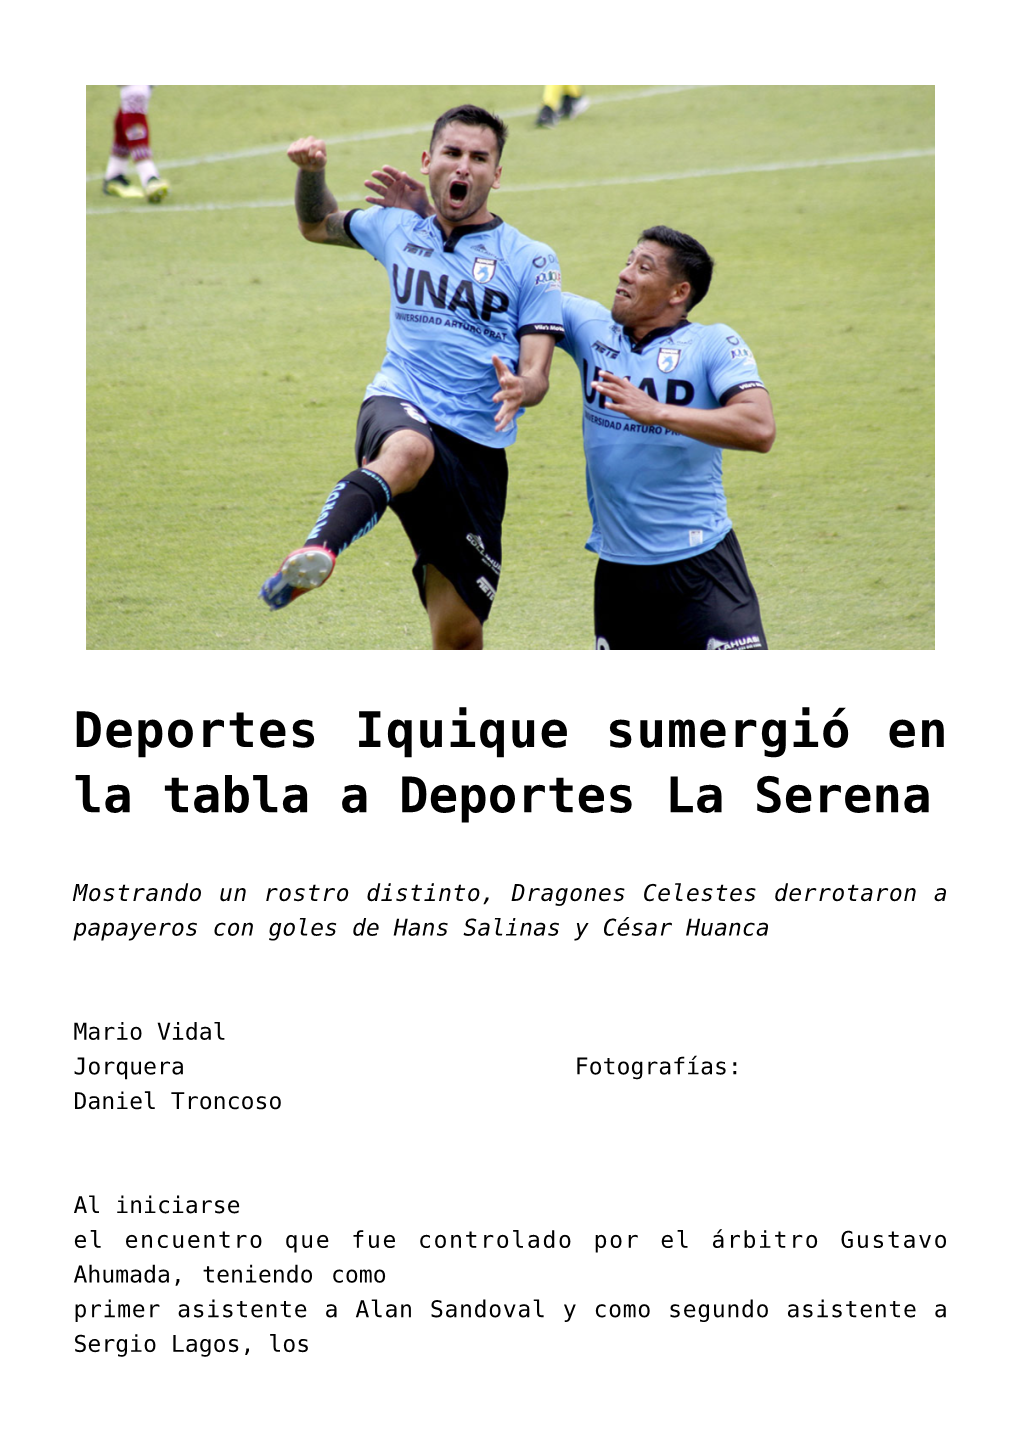 Deportes Iquique Sumergió En La Tabla a Deportes La Serena